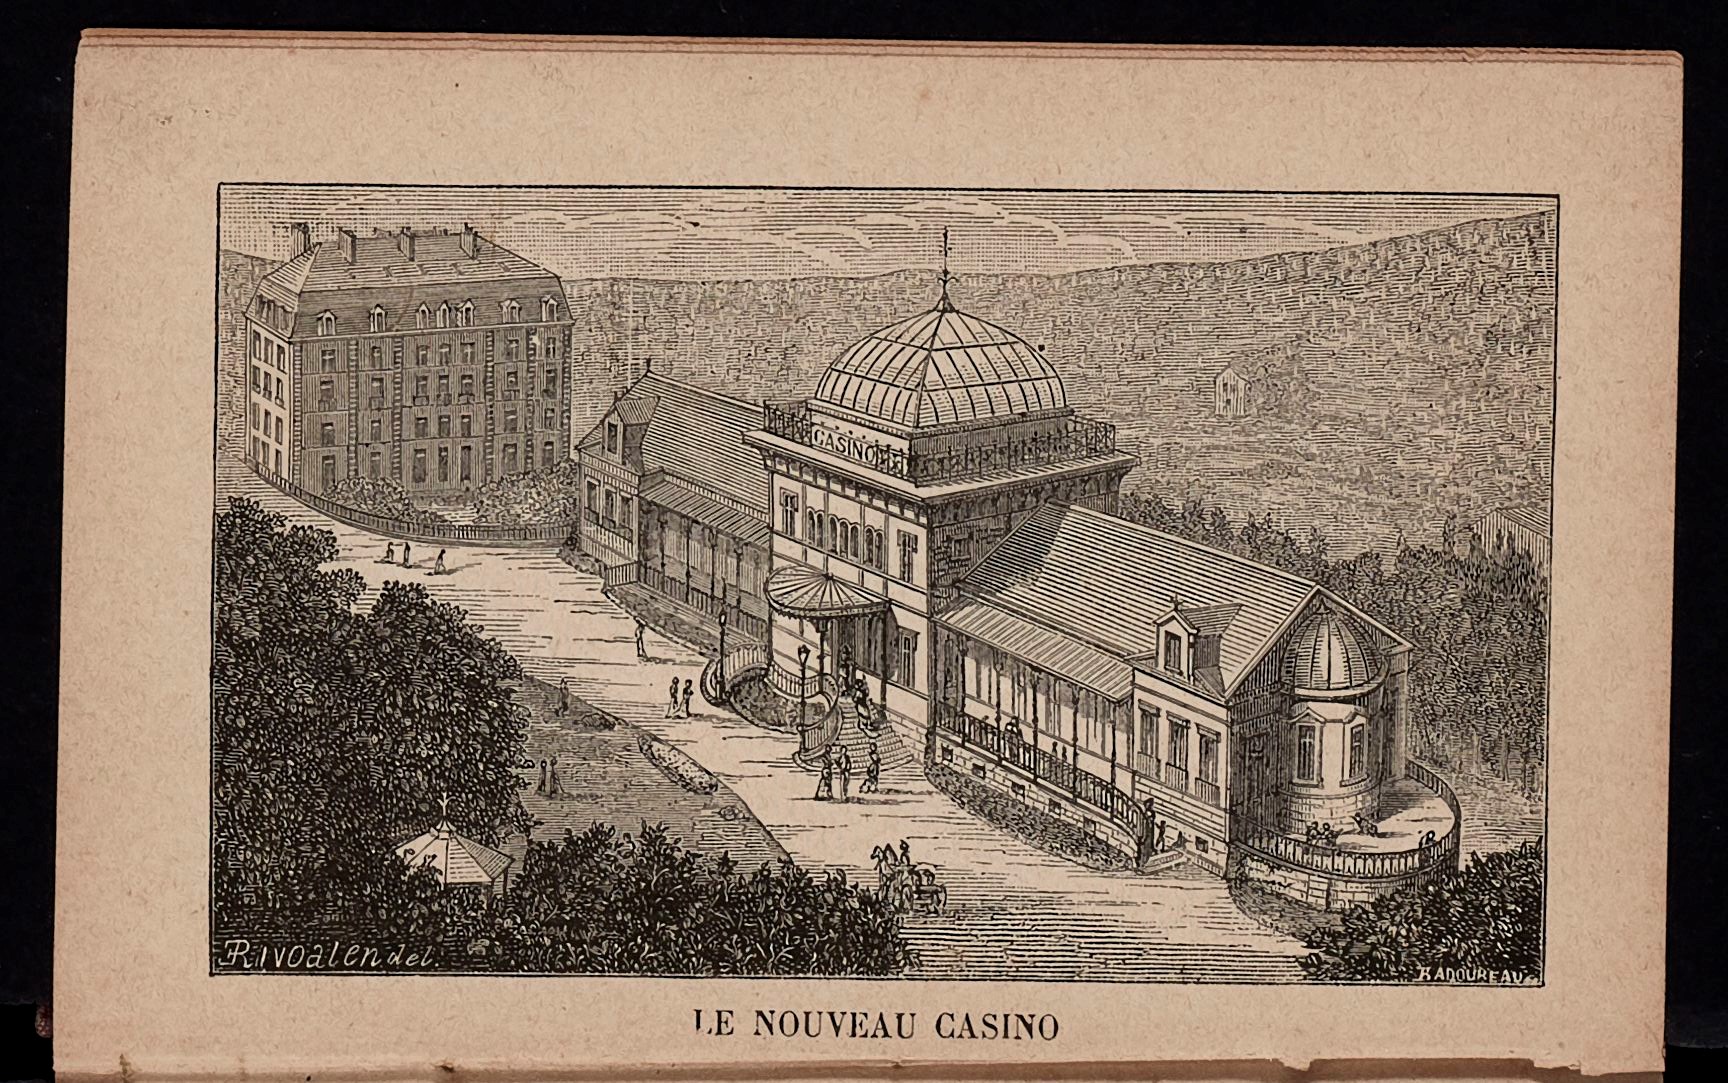 Contenu du Le Nouveau casino